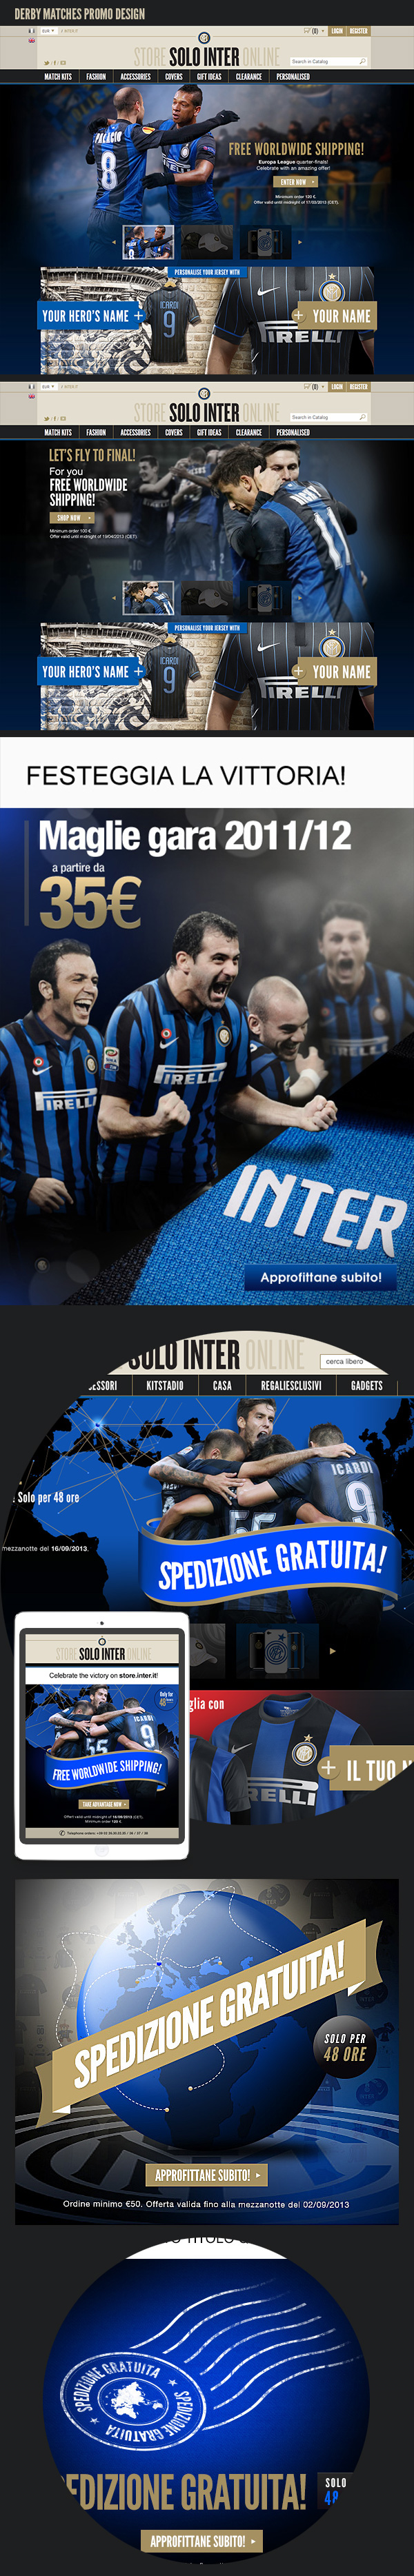 inter internazionale F.C. Internazionale milan milano calcio sport soccer football SoloInter newsletter Newsletter Design banners banner design store.inter.it